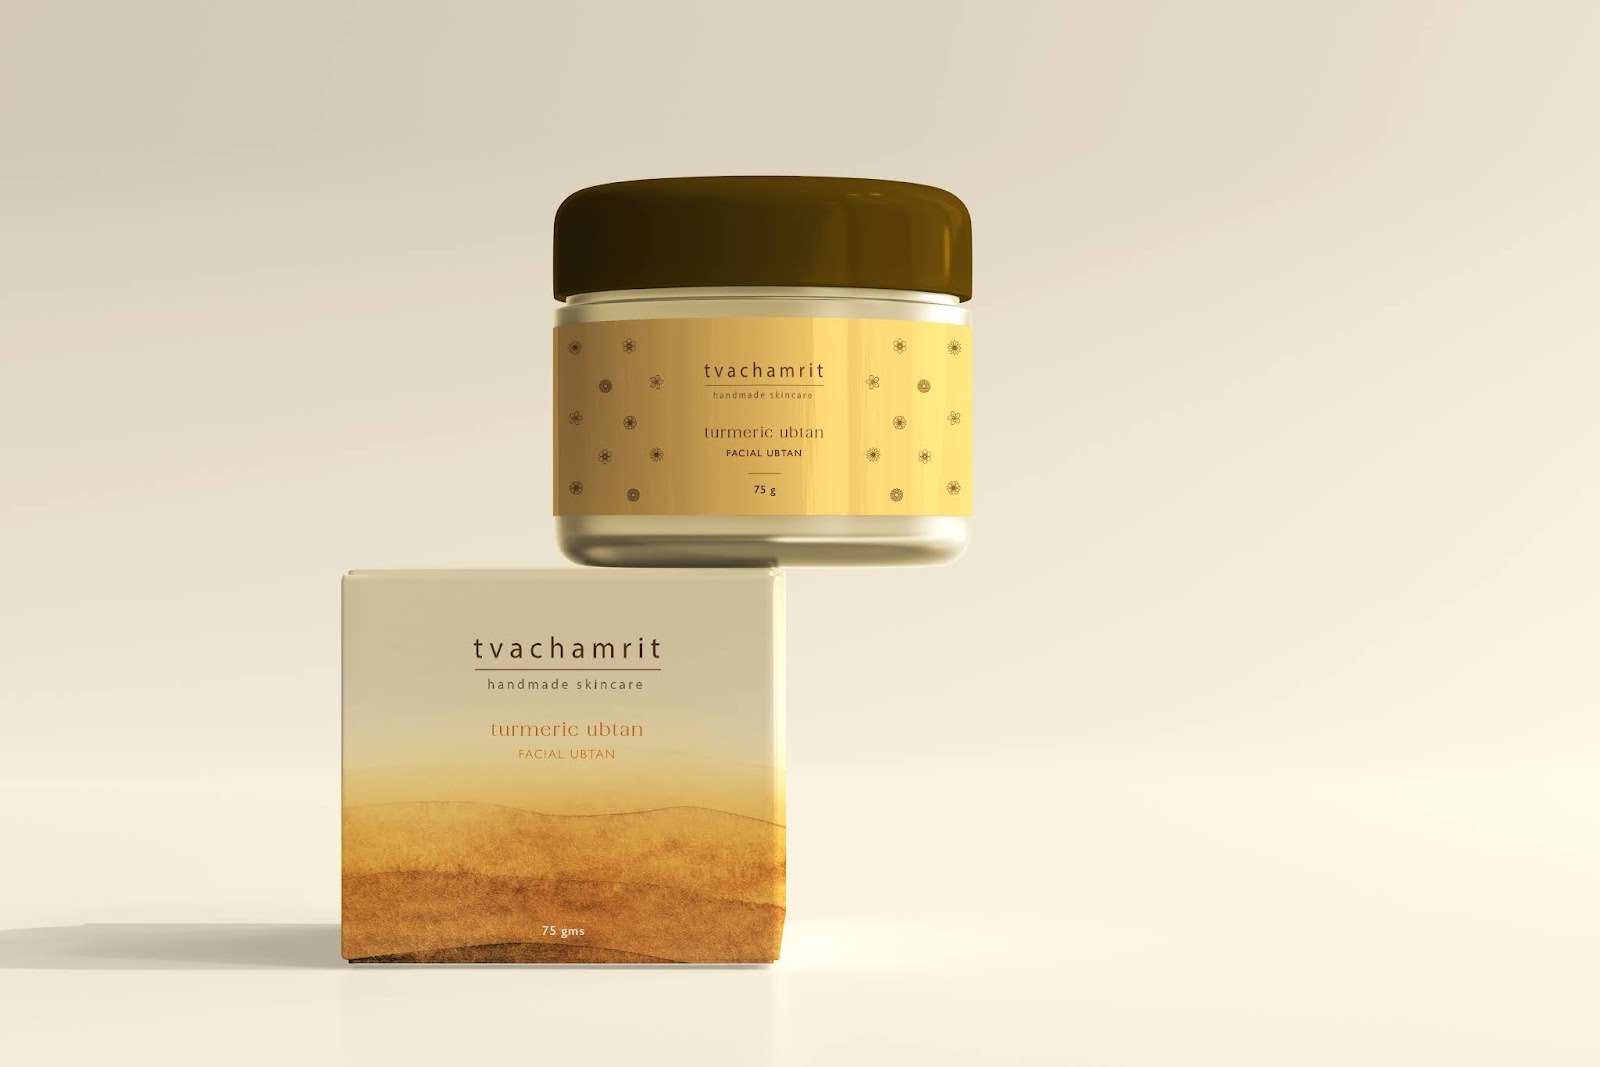 Tvachamrit护肤品包装设计